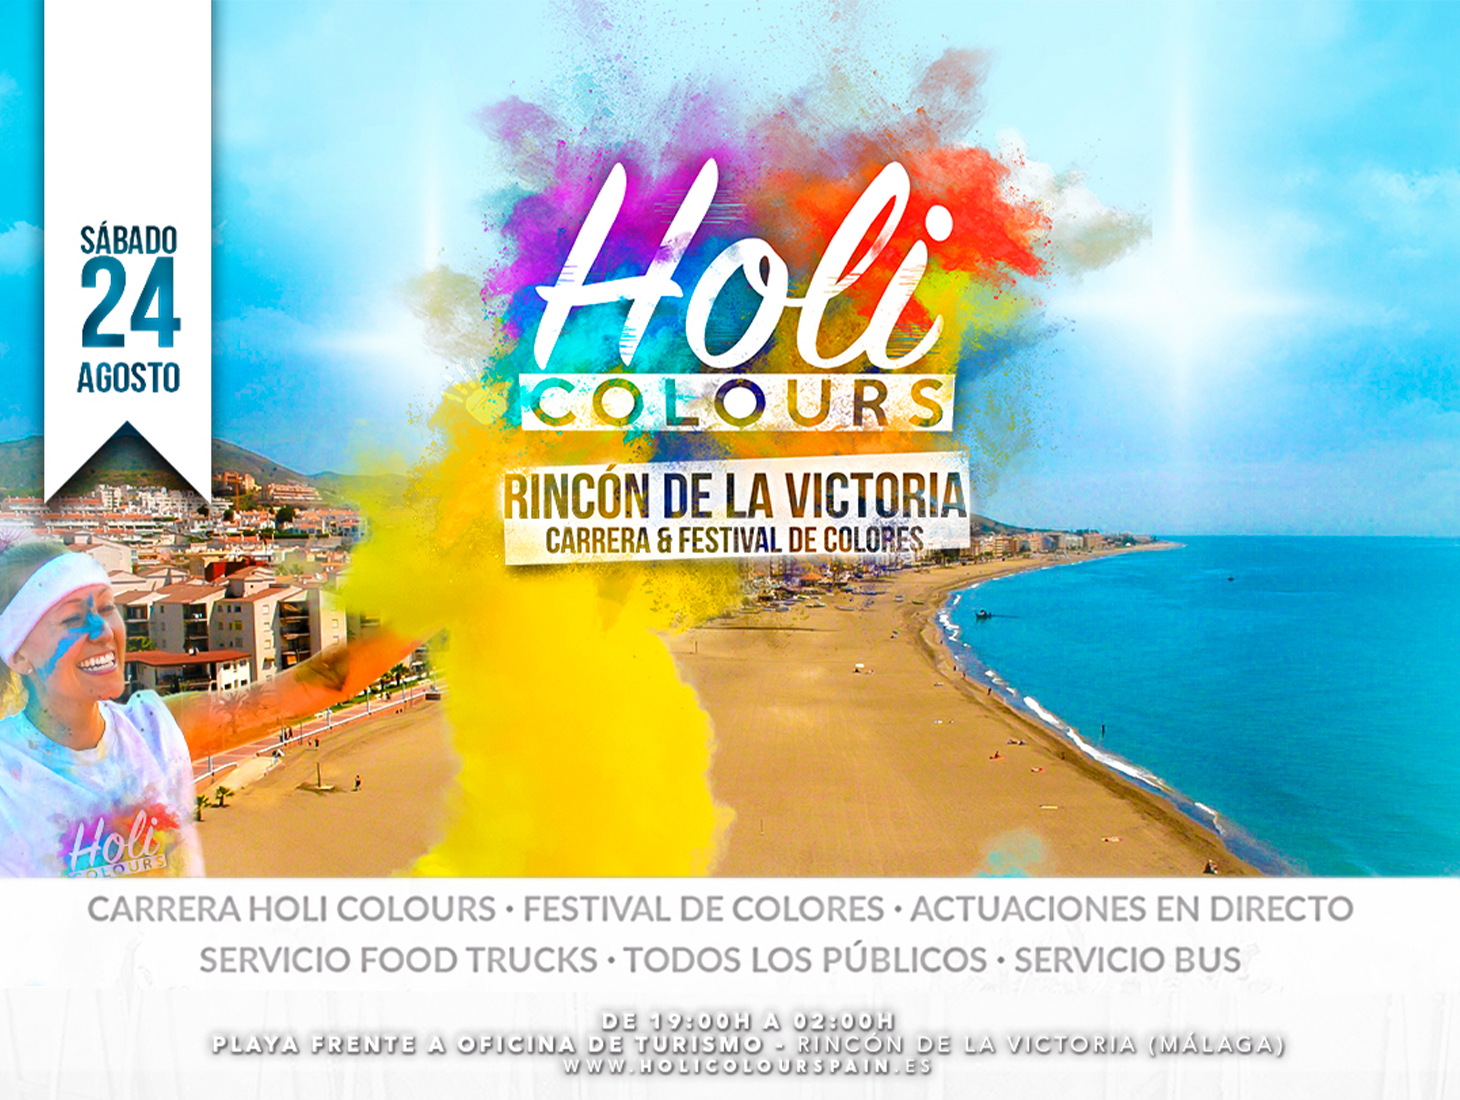 holi-colours-5ced11be54f48.jpeg